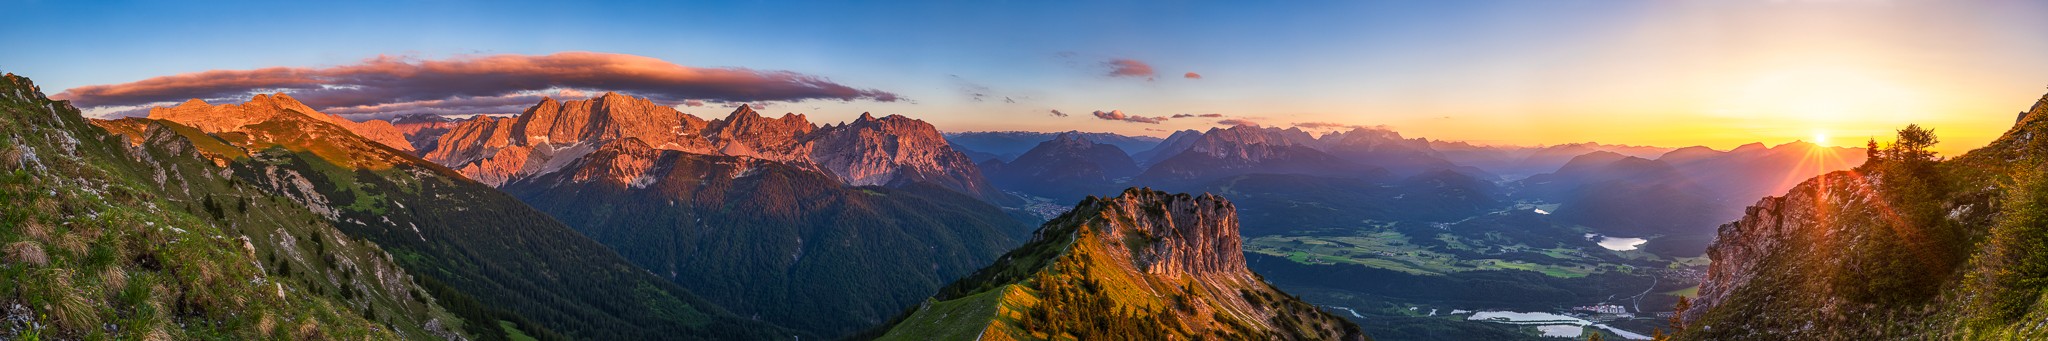 Fantastisches Abendrot über dem oberen Isartal. Panorama von der Soiernspitze über die Westliche Karwendelspitze und dem Wettersteingebirge bis zum Estergebirge. Mittig im Vordergrund ist der Signalkopf.